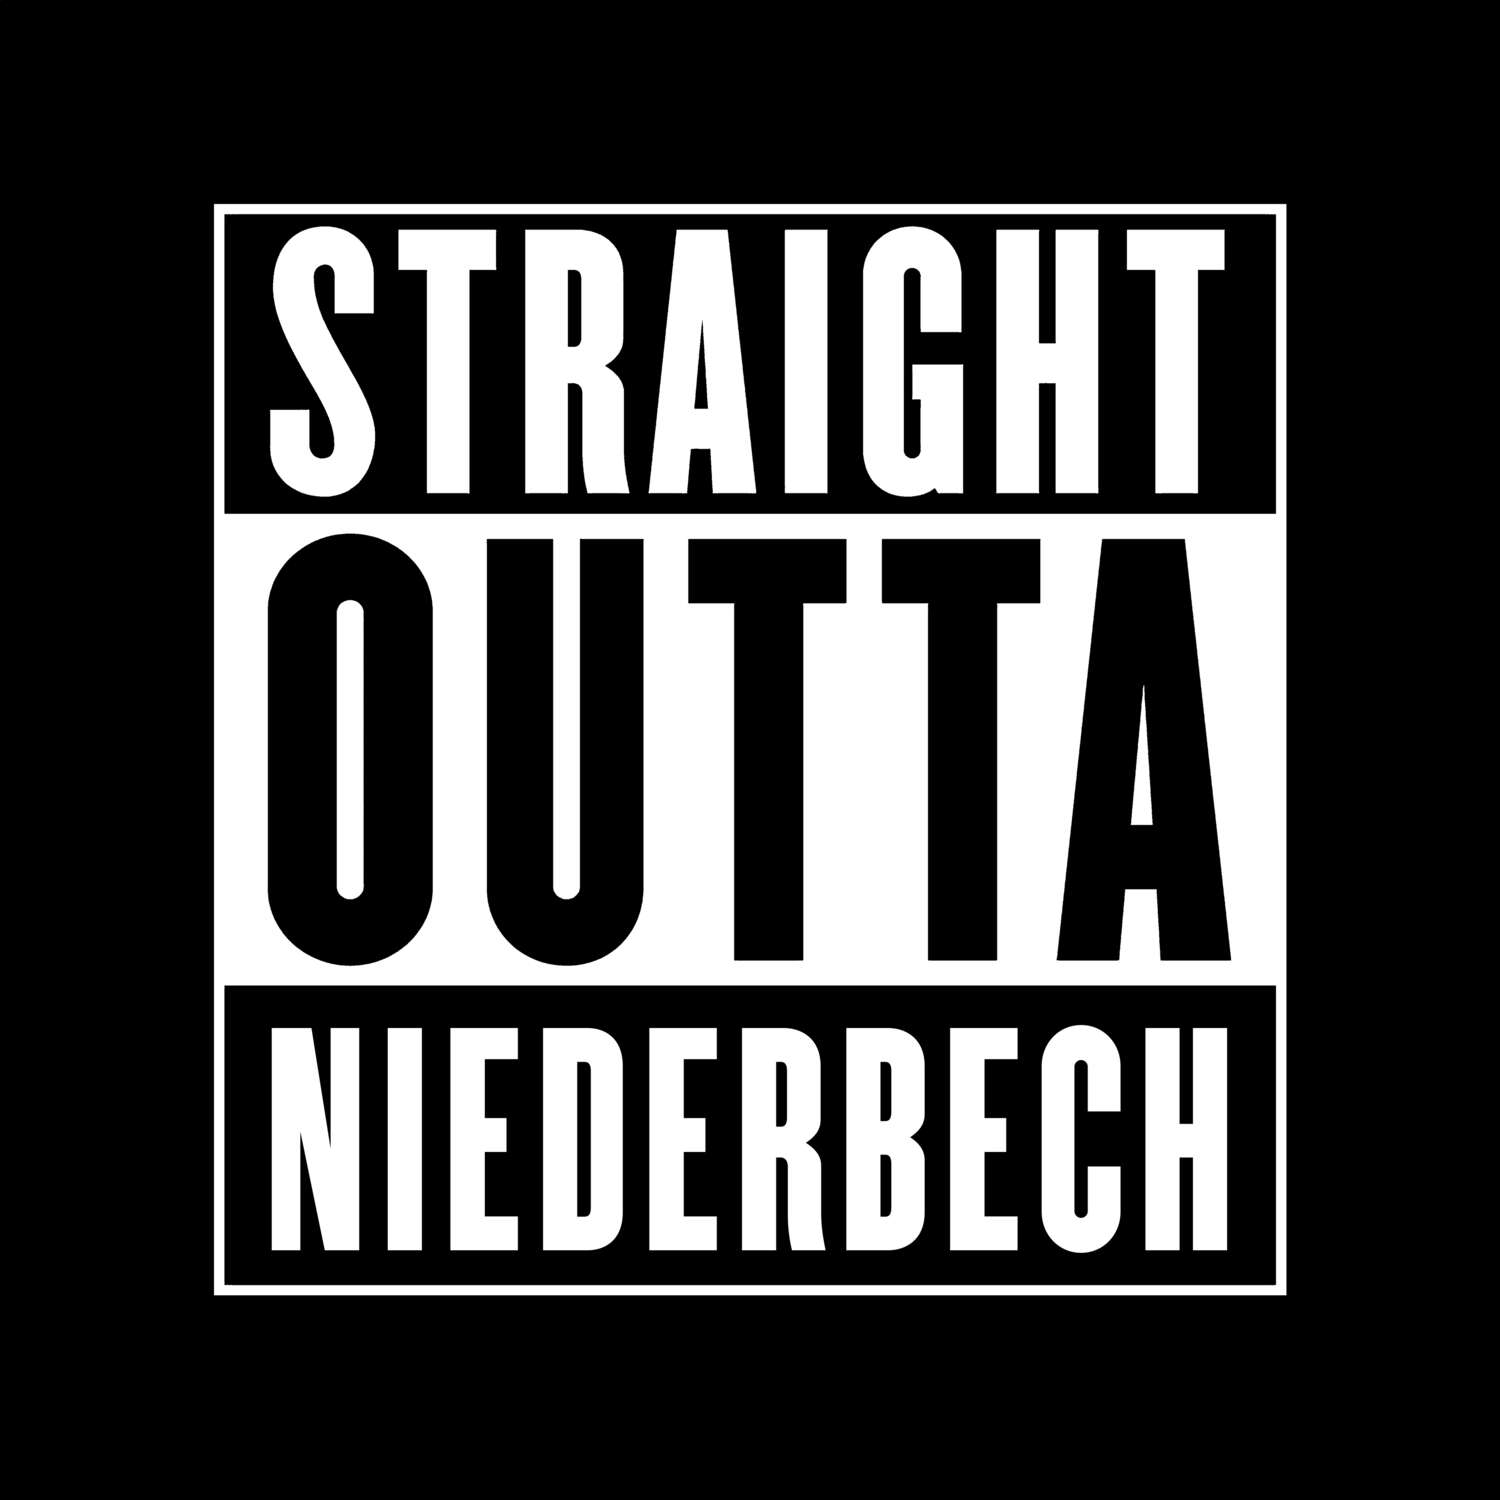 Niederbech T-Shirt »Straight Outta«